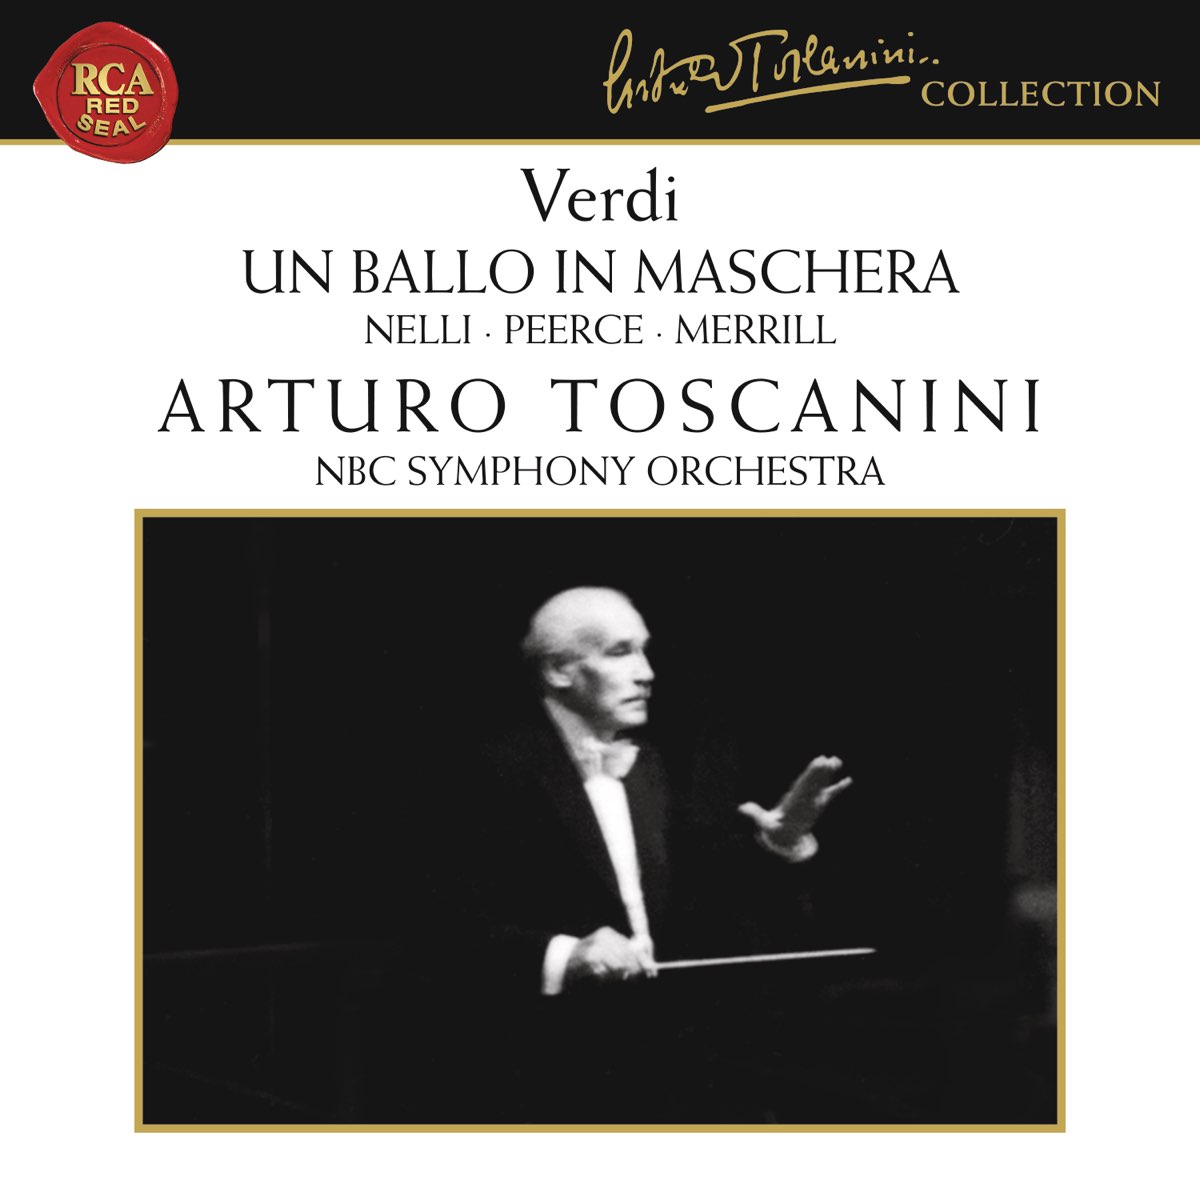 Verdi: Un Ballo in Maschera - Album by Arturo Toscanini - Apple Music